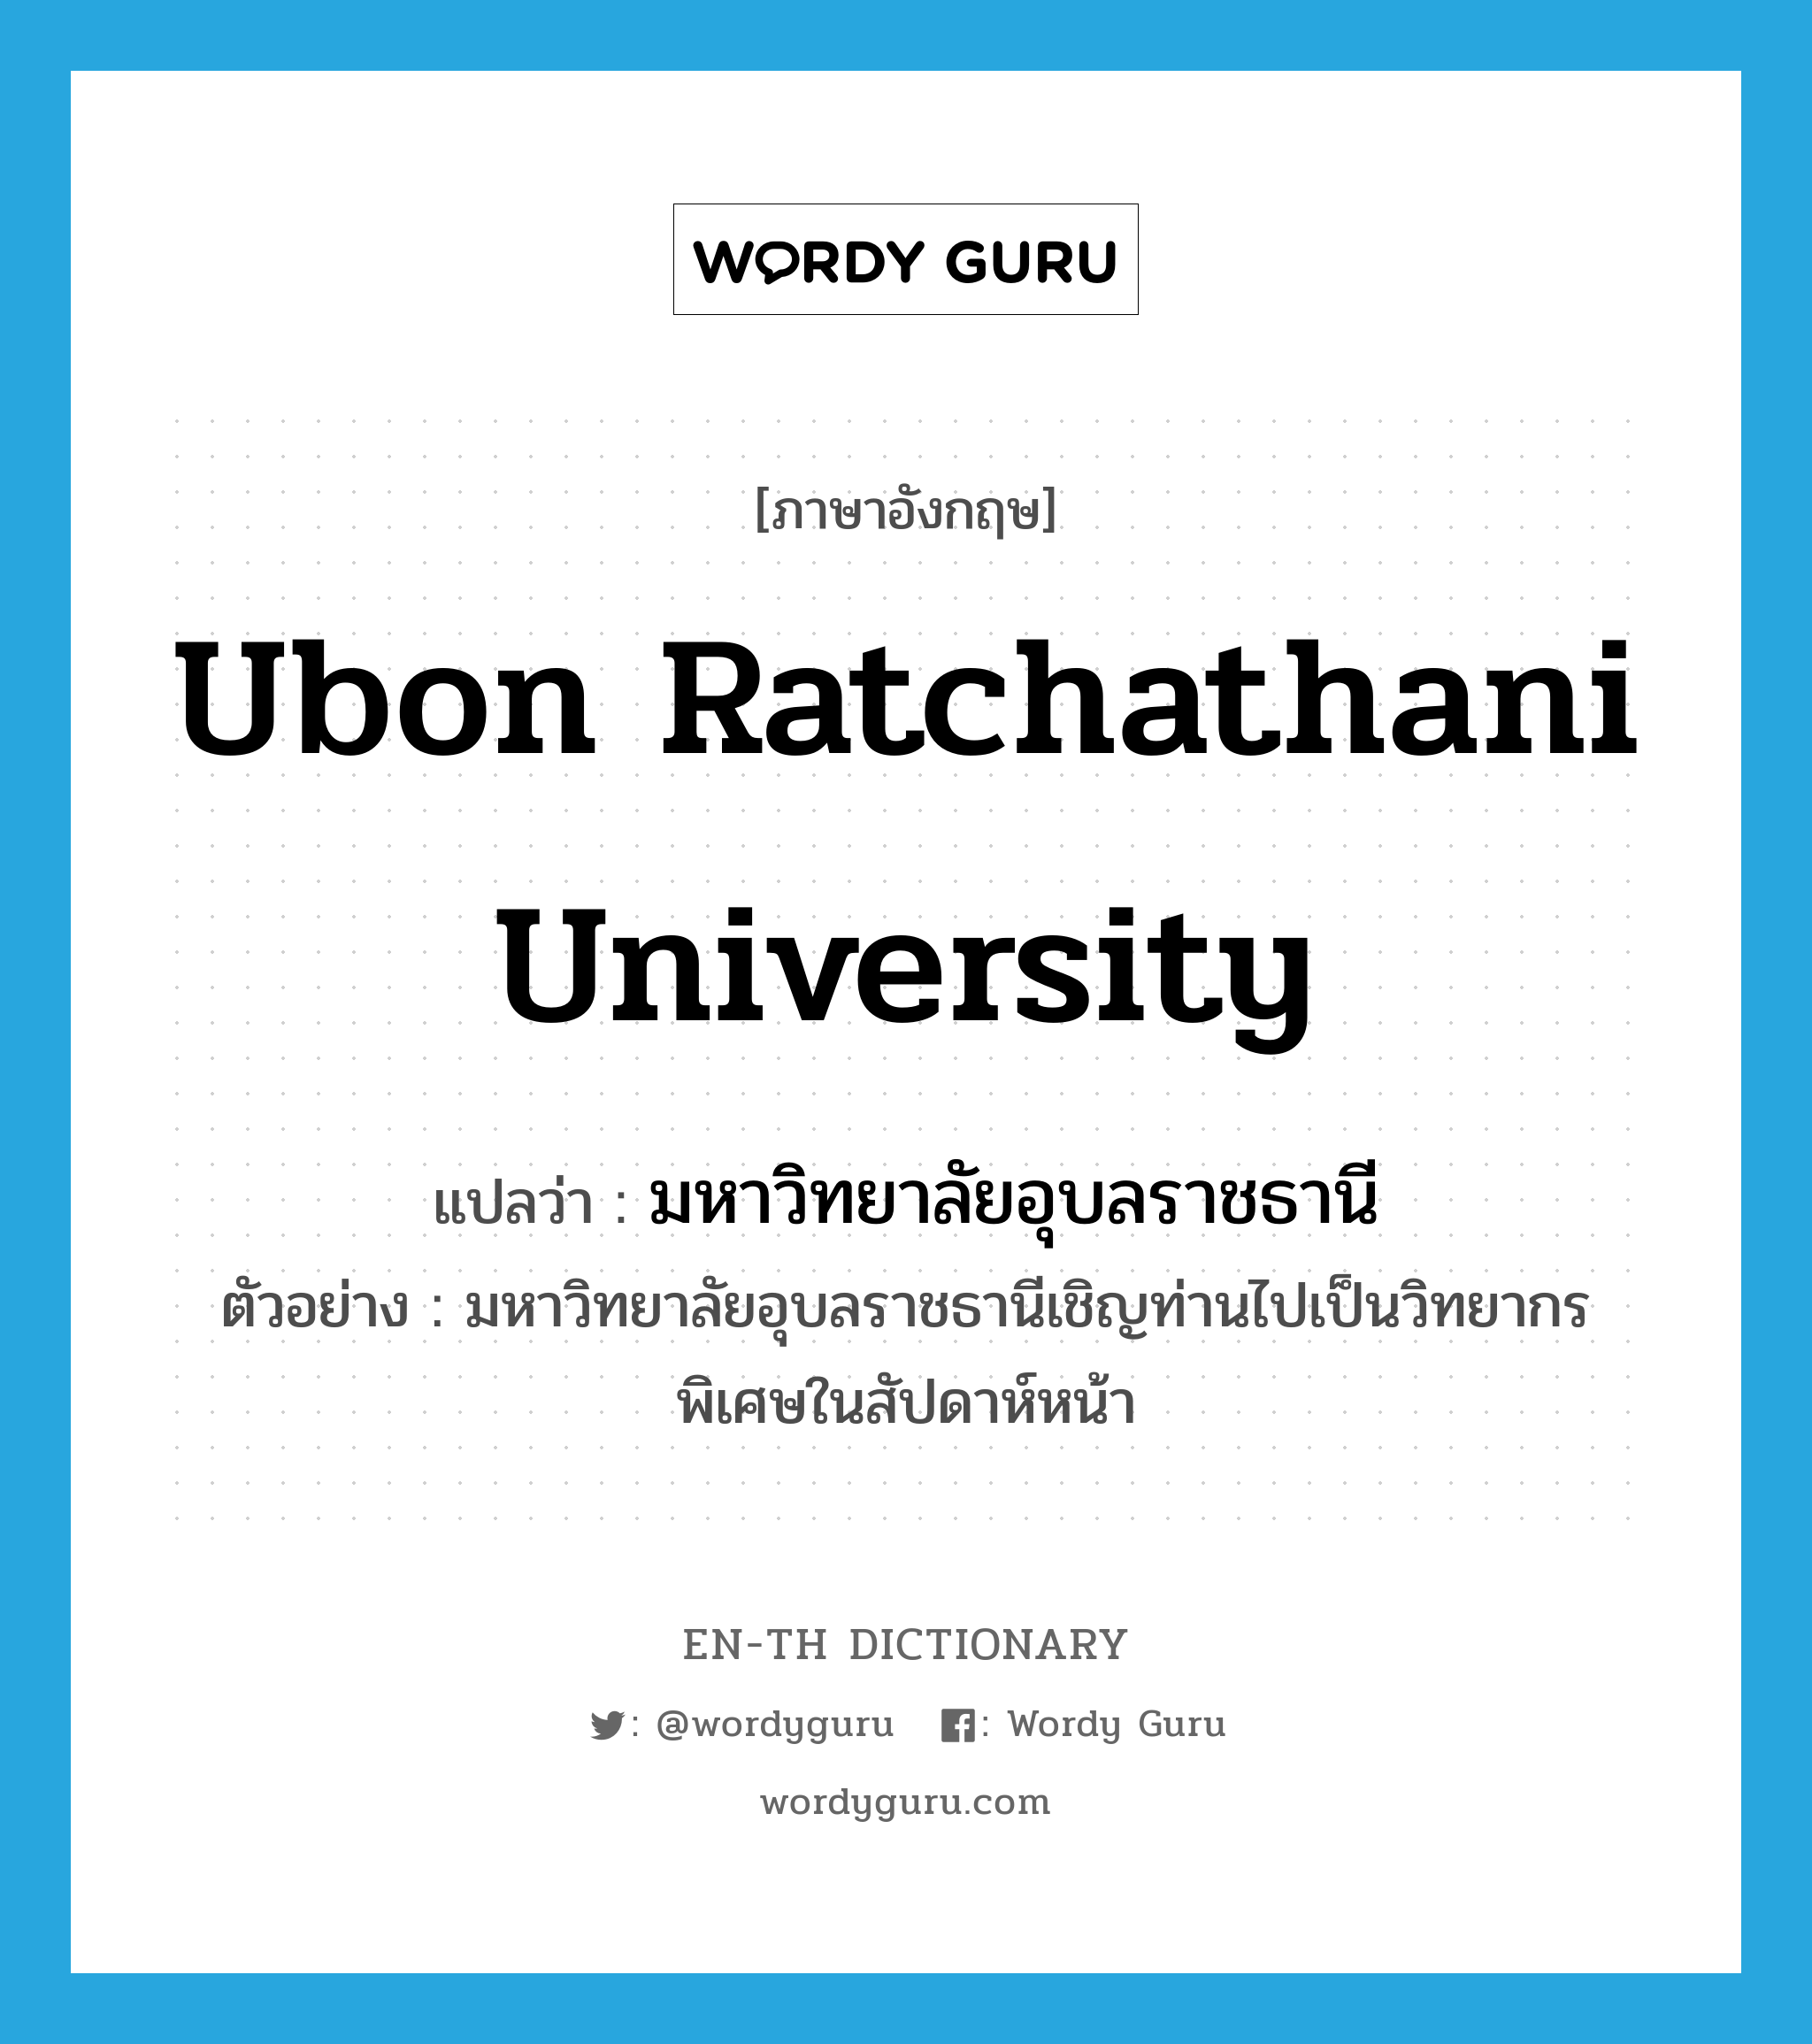 Ubon Ratchathani University แปลว่า?, คำศัพท์ภาษาอังกฤษ Ubon Ratchathani University แปลว่า มหาวิทยาลัยอุบลราชธานี ประเภท N ตัวอย่าง มหาวิทยาลัยอุบลราชธานีเชิญท่านไปเป็นวิทยากรพิเศษในสัปดาห์หน้า หมวด N